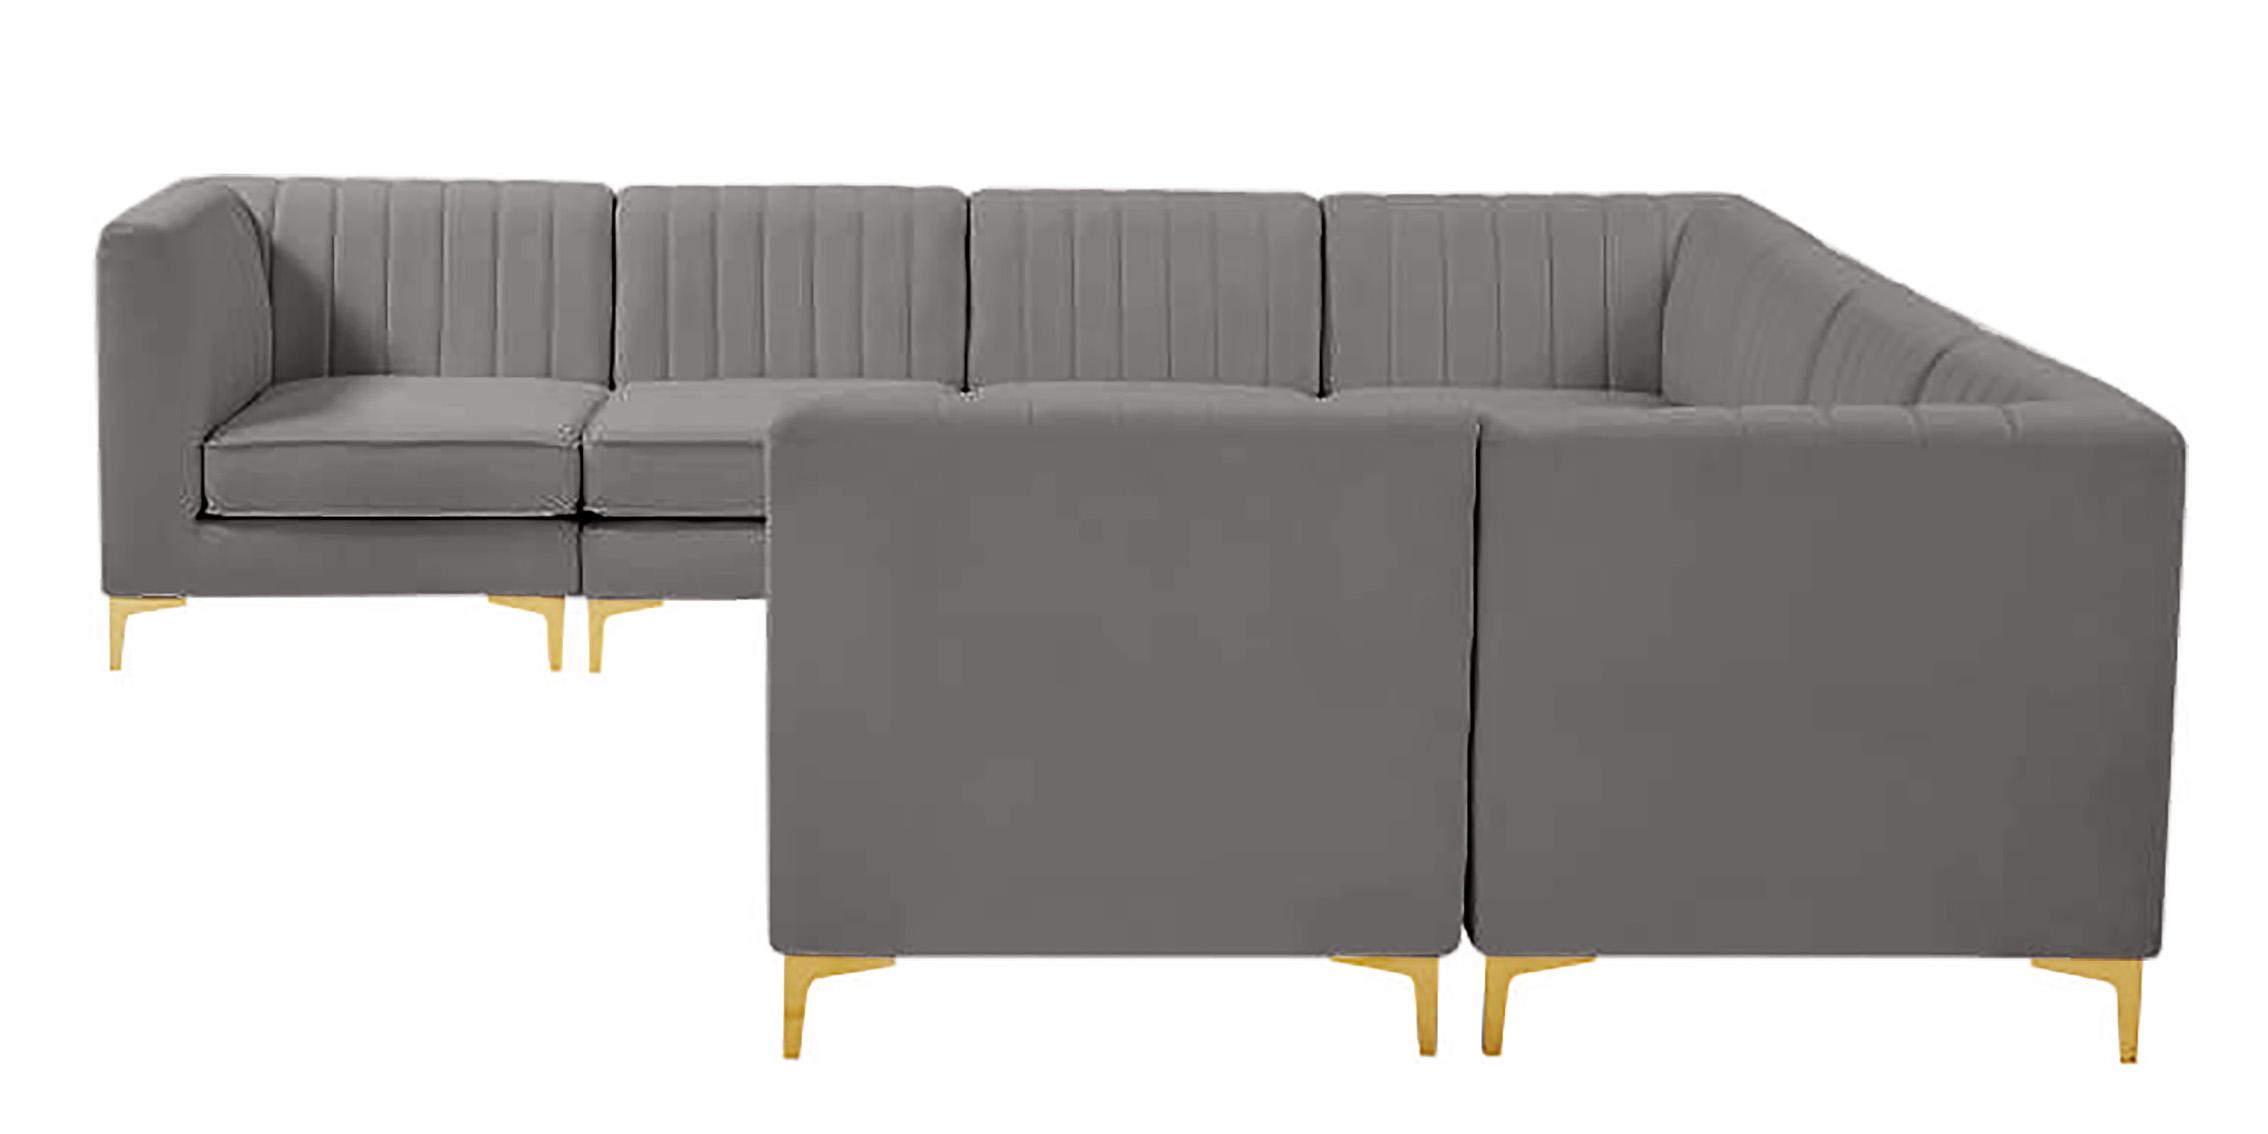 

    
604Grey-Sec8A Meridian Furniture Modular Sectional Sofa
